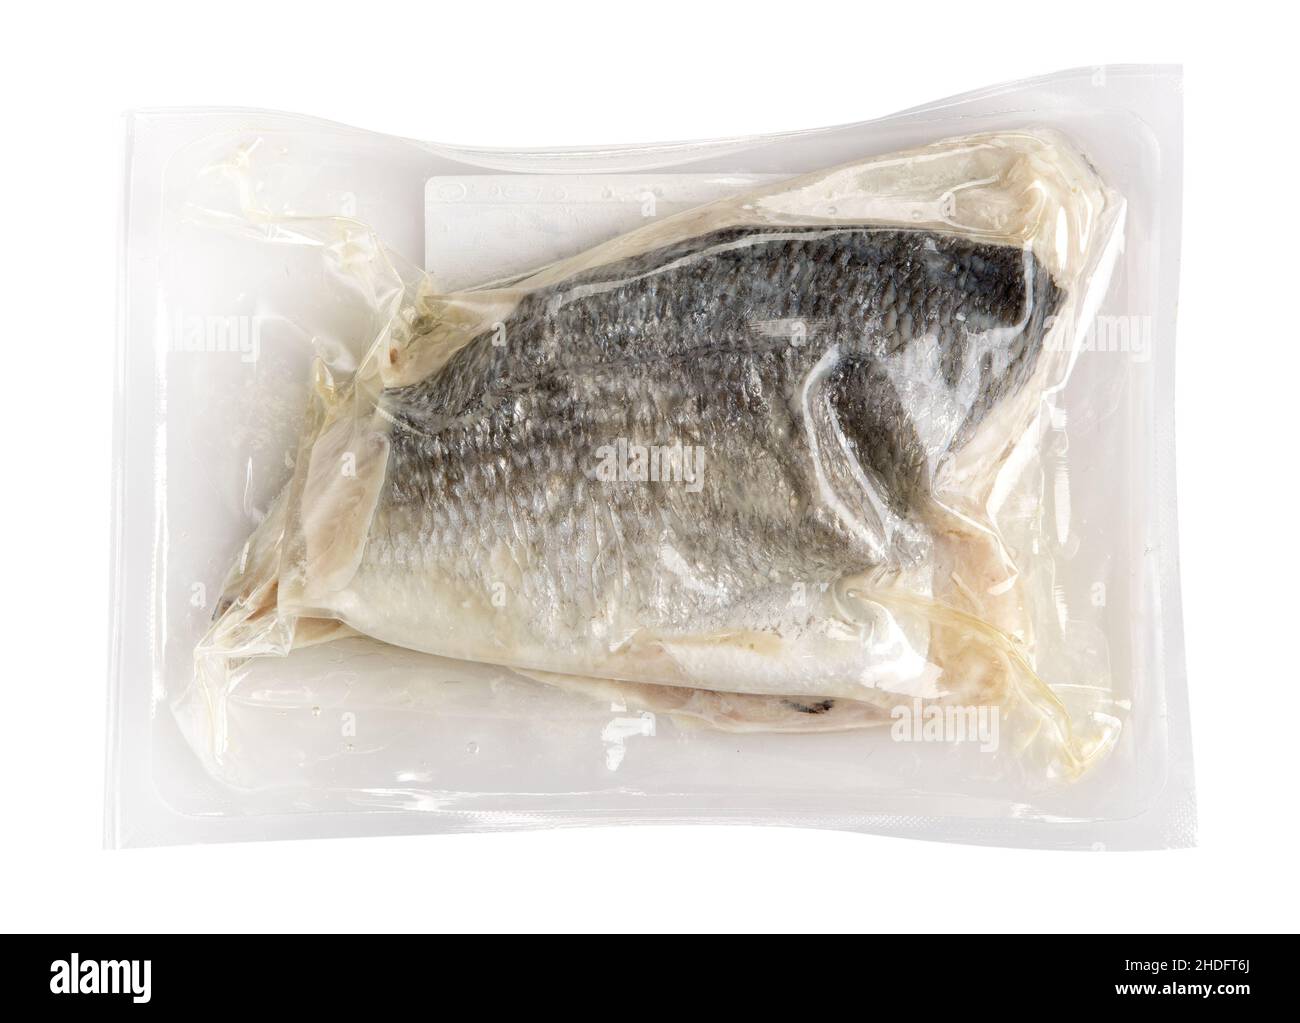 pesci, durevolezza, sotto vuoto impaccato, pesci, durabilità, confezioni sottovuoto Foto Stock